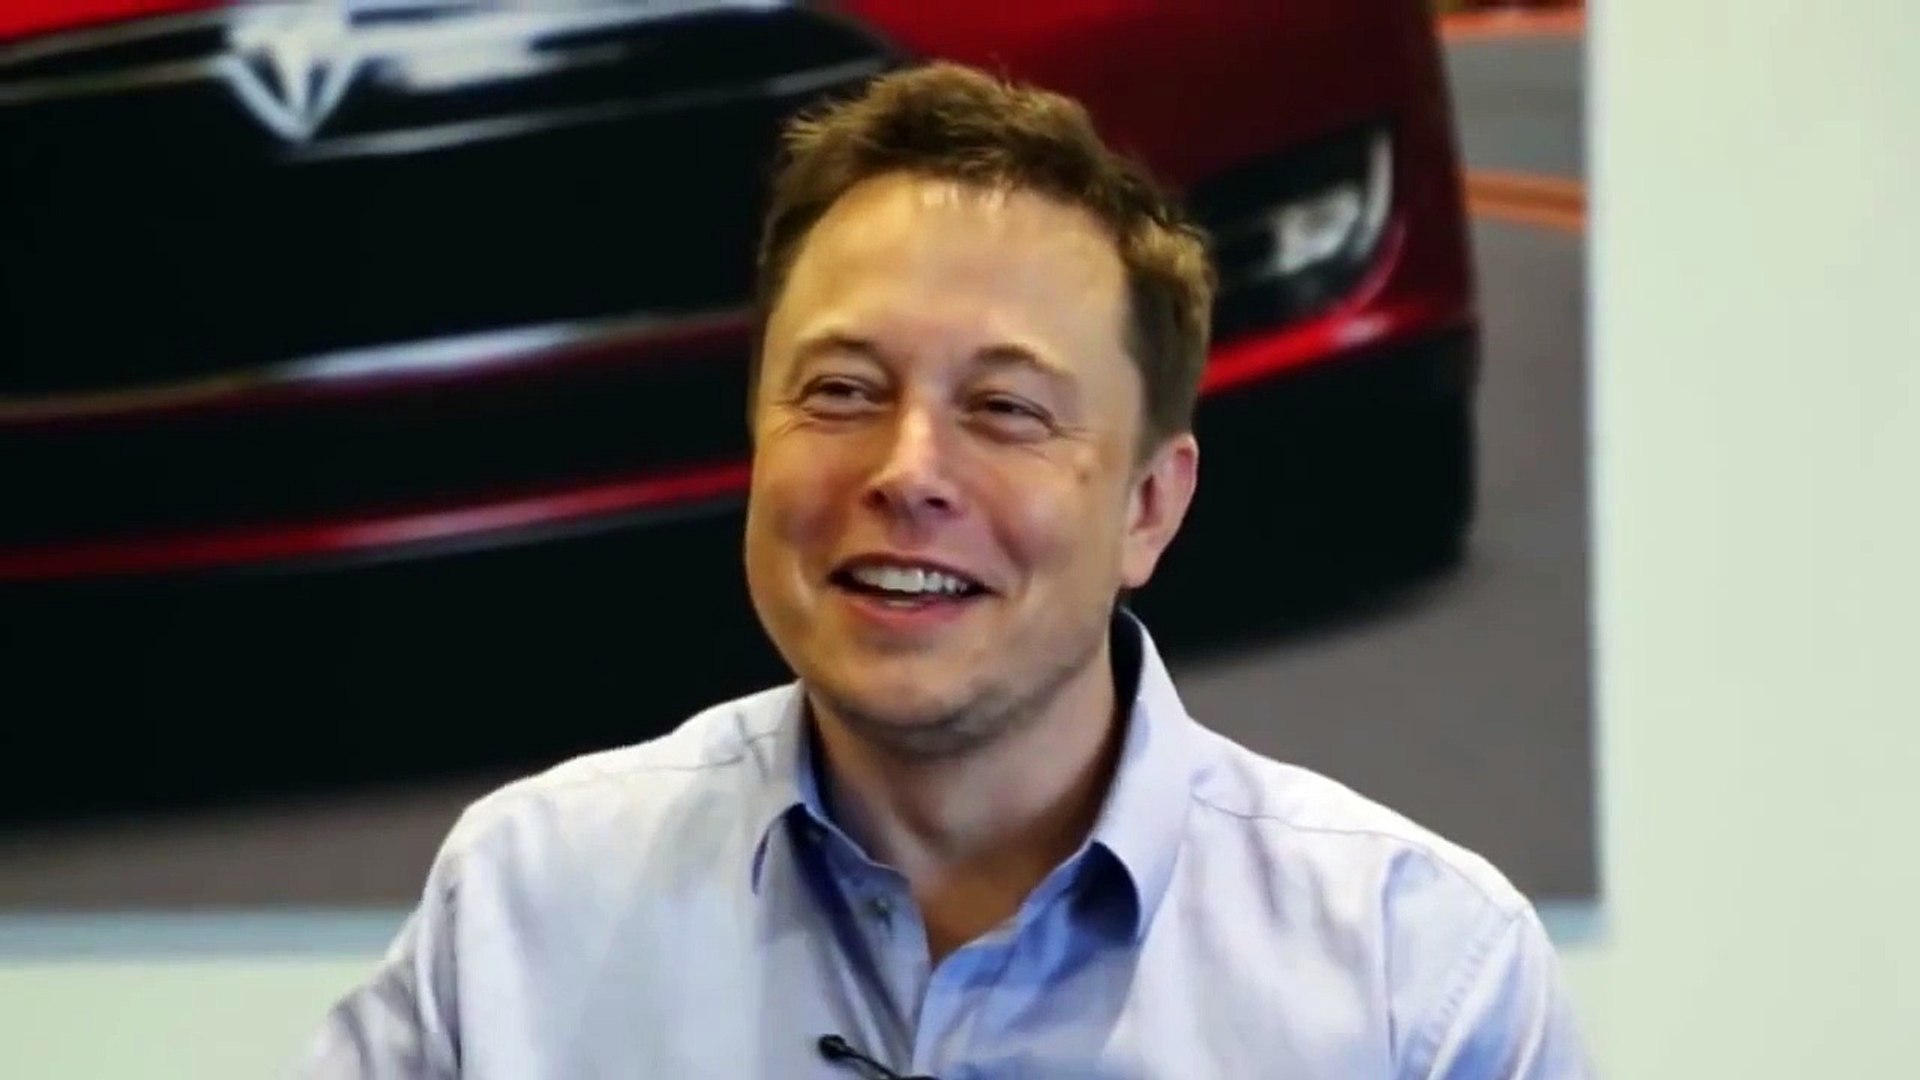 Elon Musk - Starting a Business